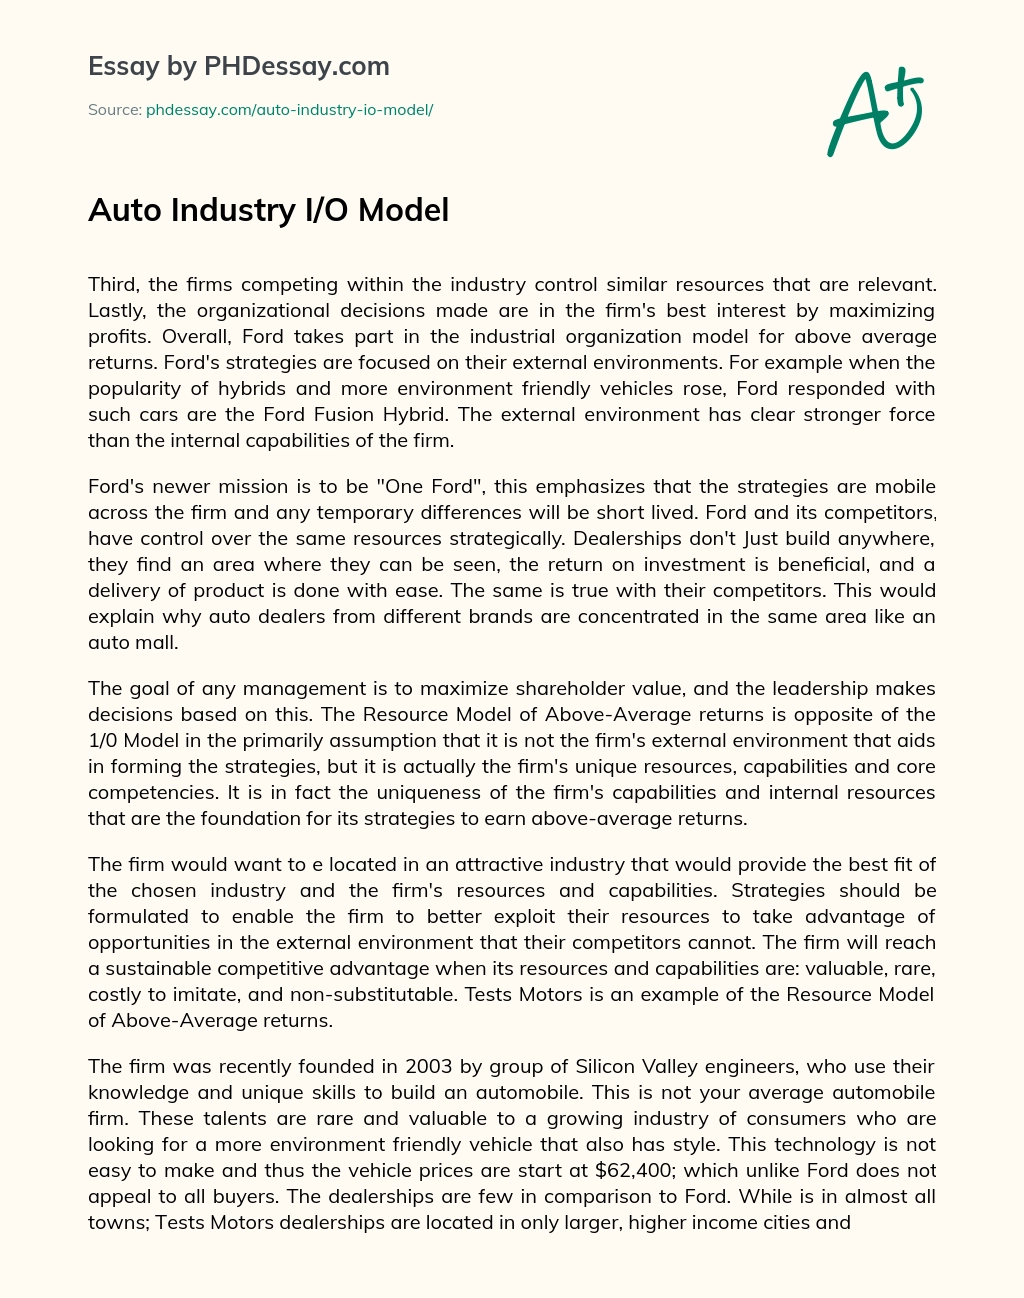 Auto Industry I/O Model essay